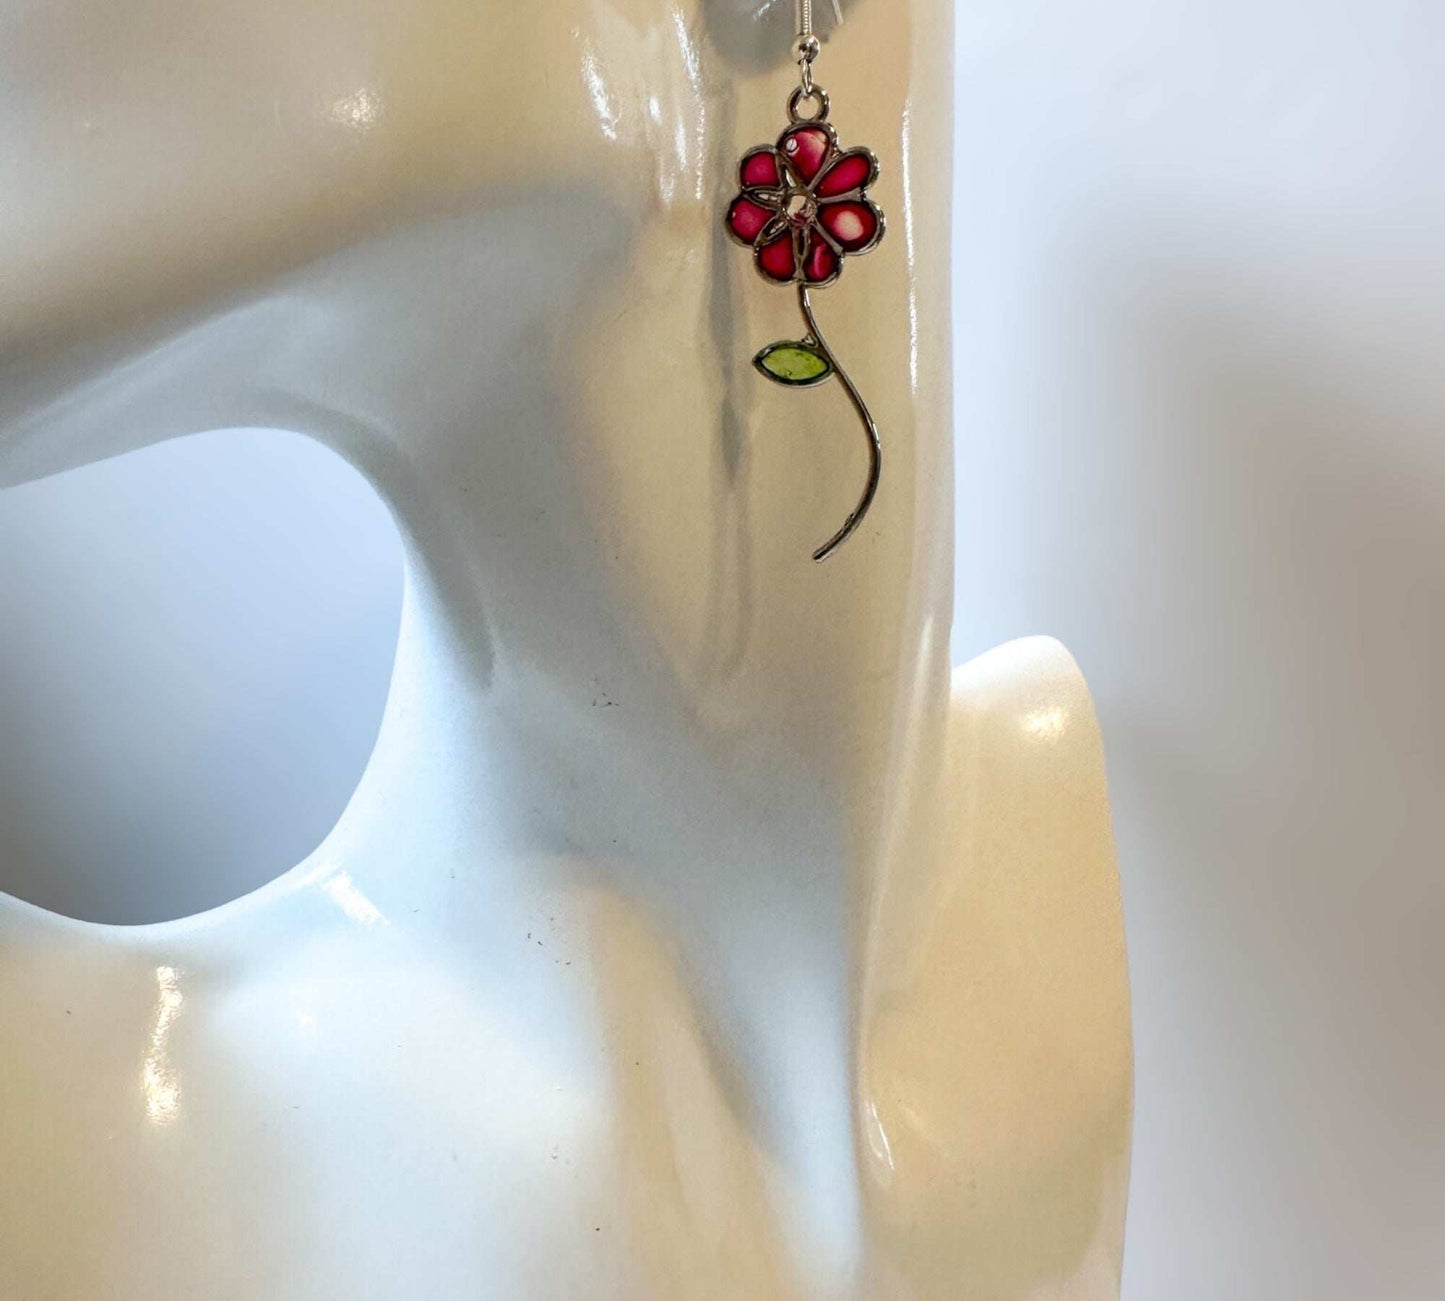 Handmade Quartz Blossom Resin Earrings - Bloom with Nature's Energy